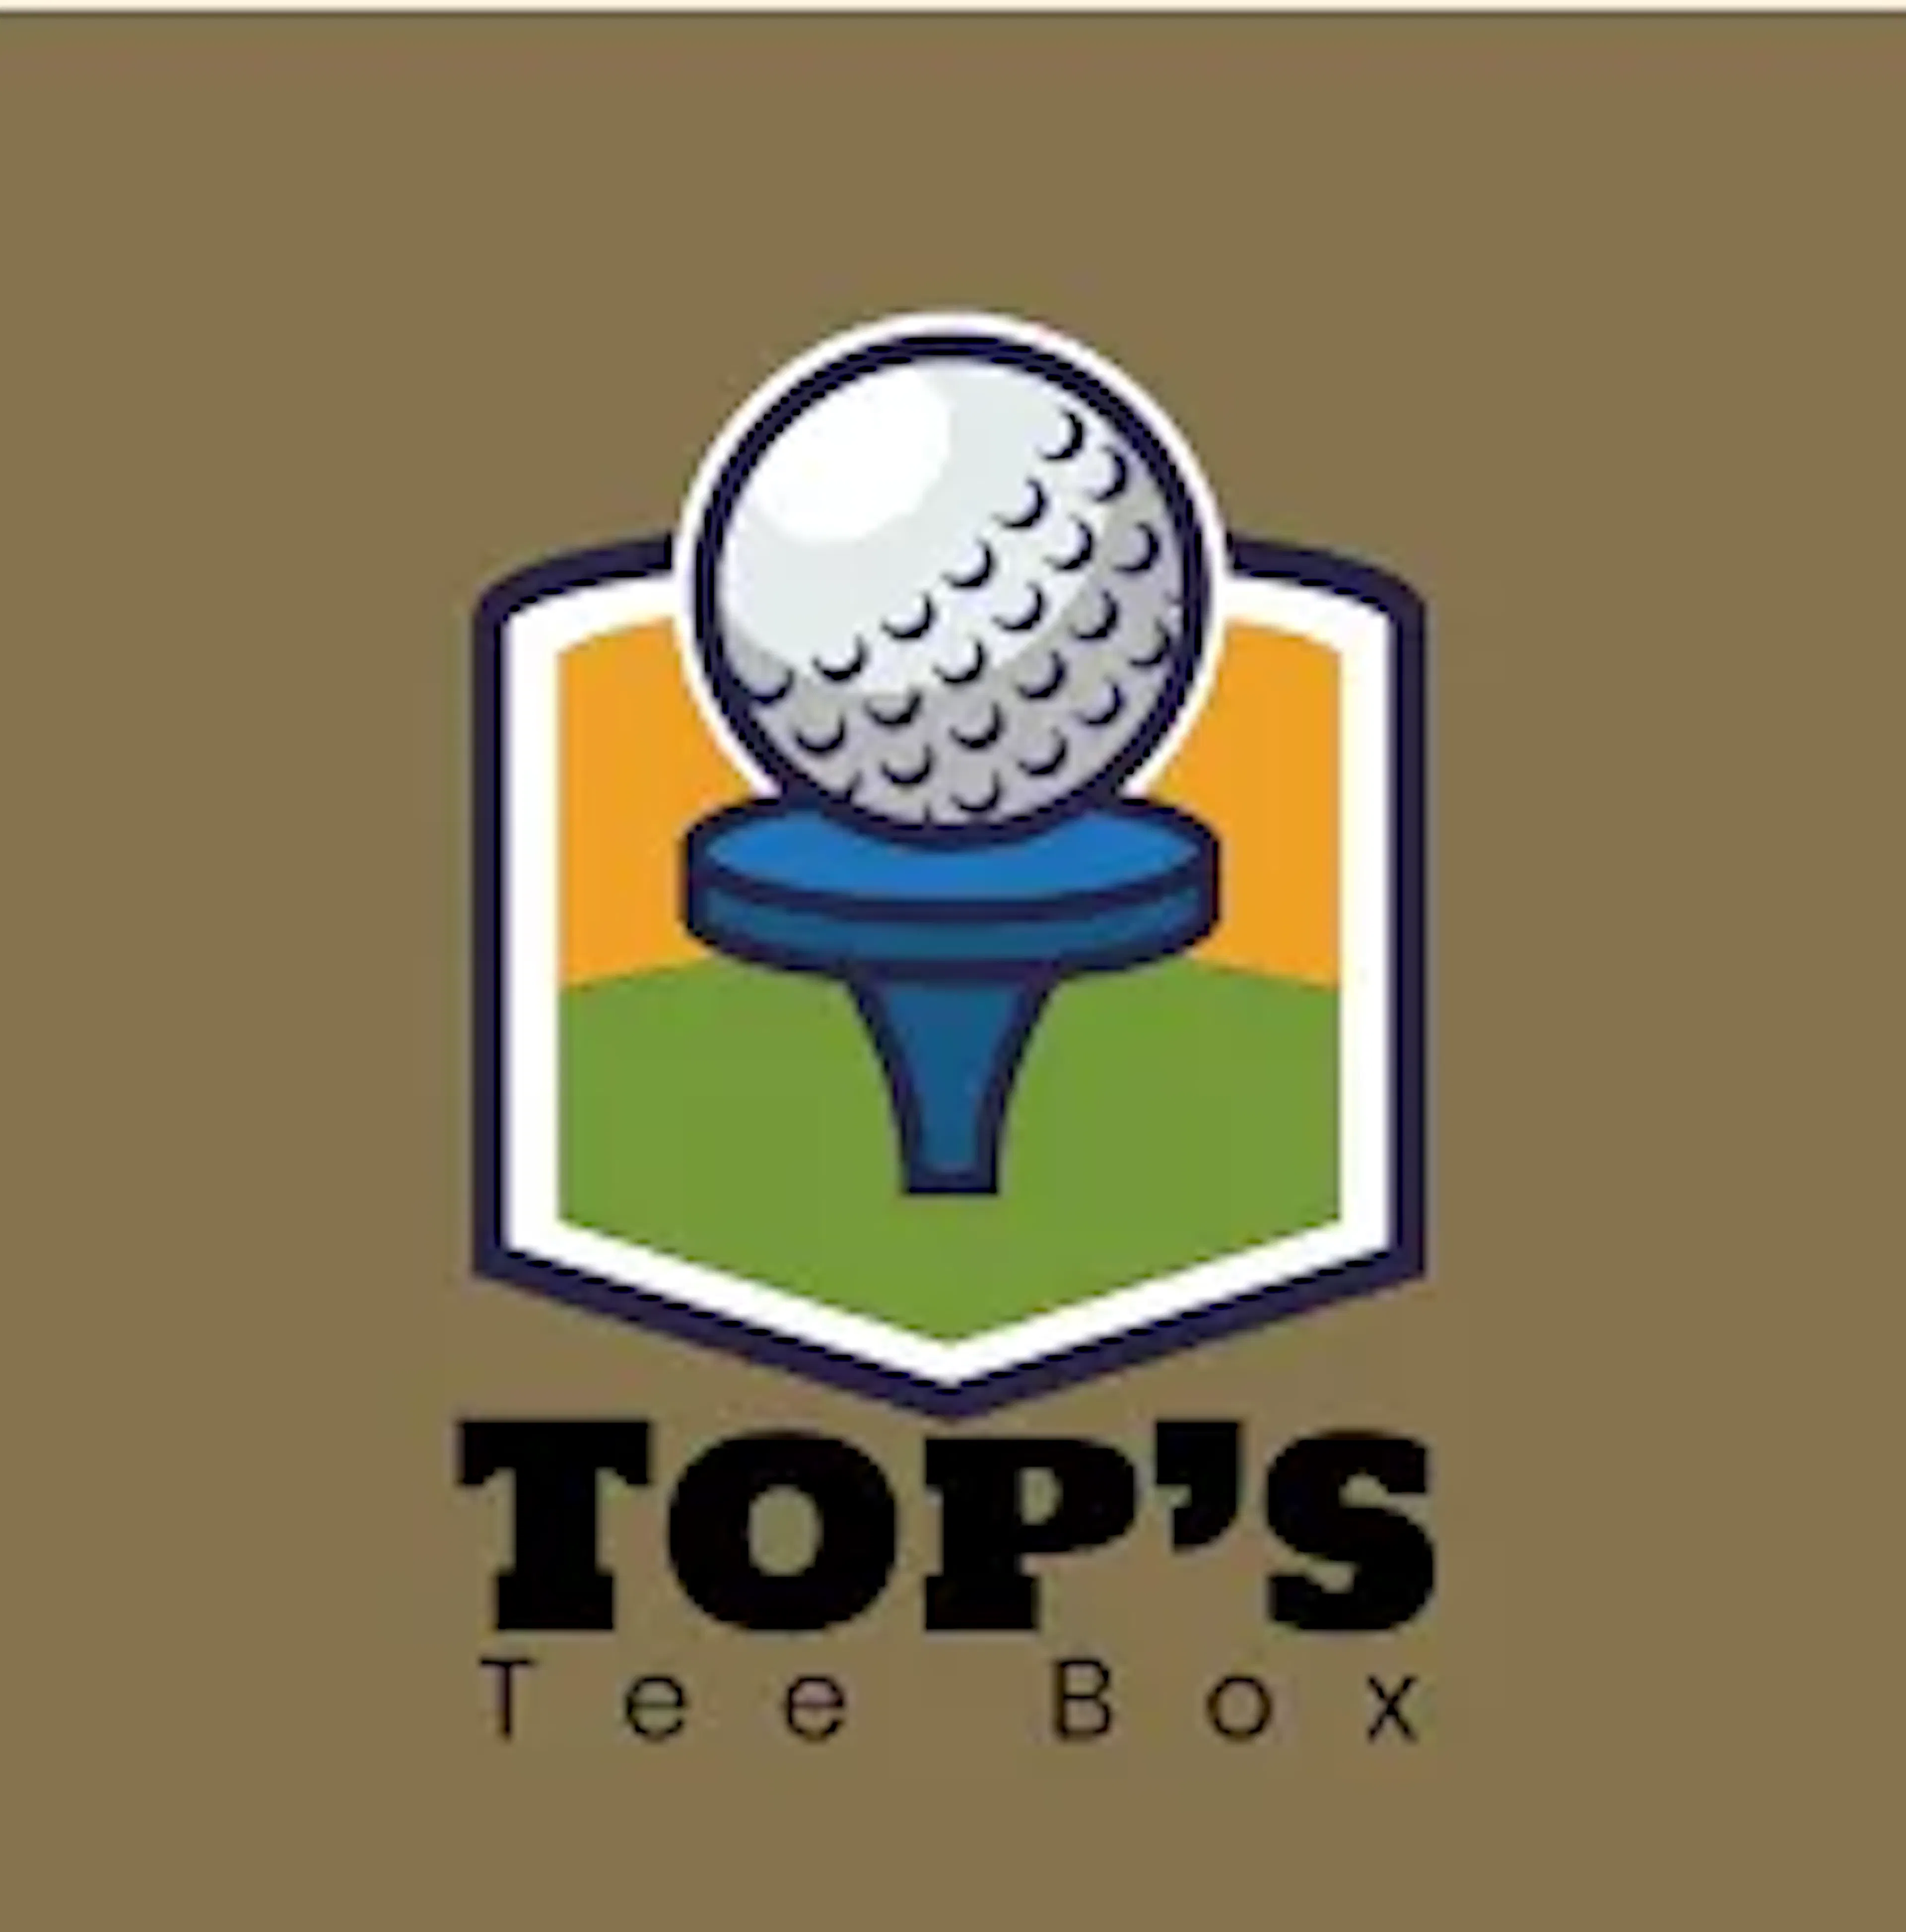 tops tee box